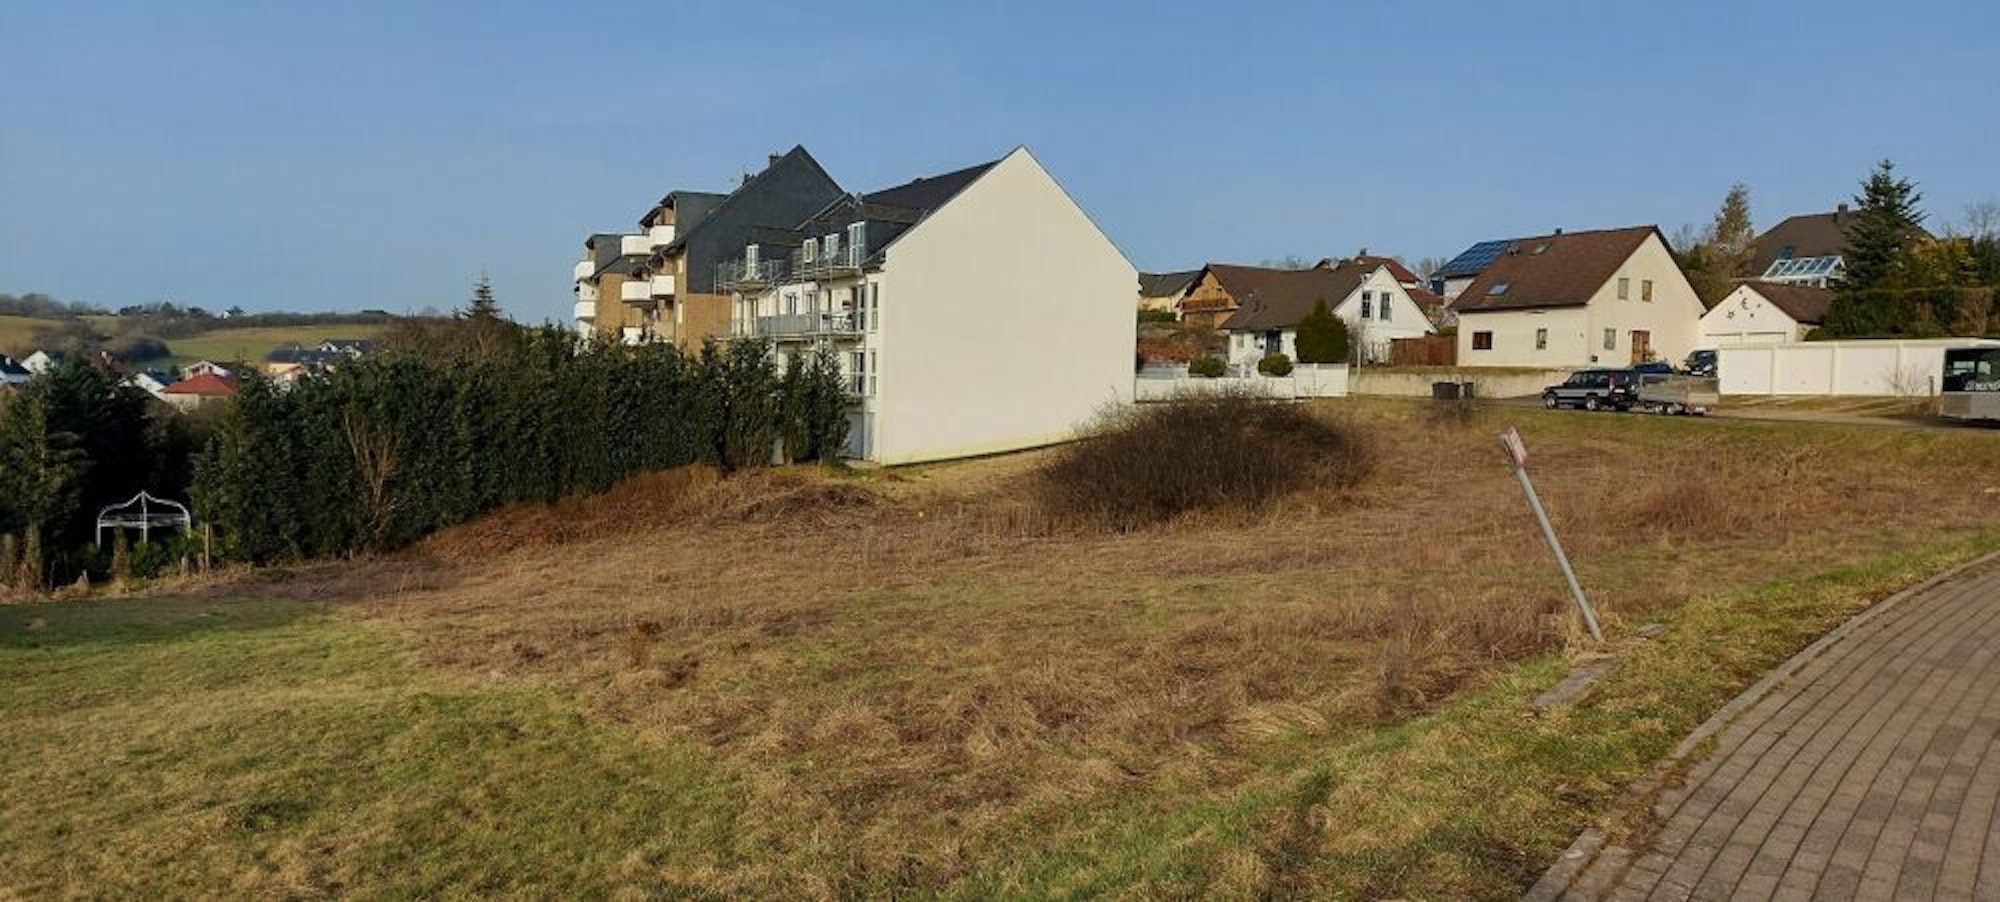 Am Frankenring in Blankenheim soll auf diesem Grundstück der fünfgruppige Kindergarten entstehen.